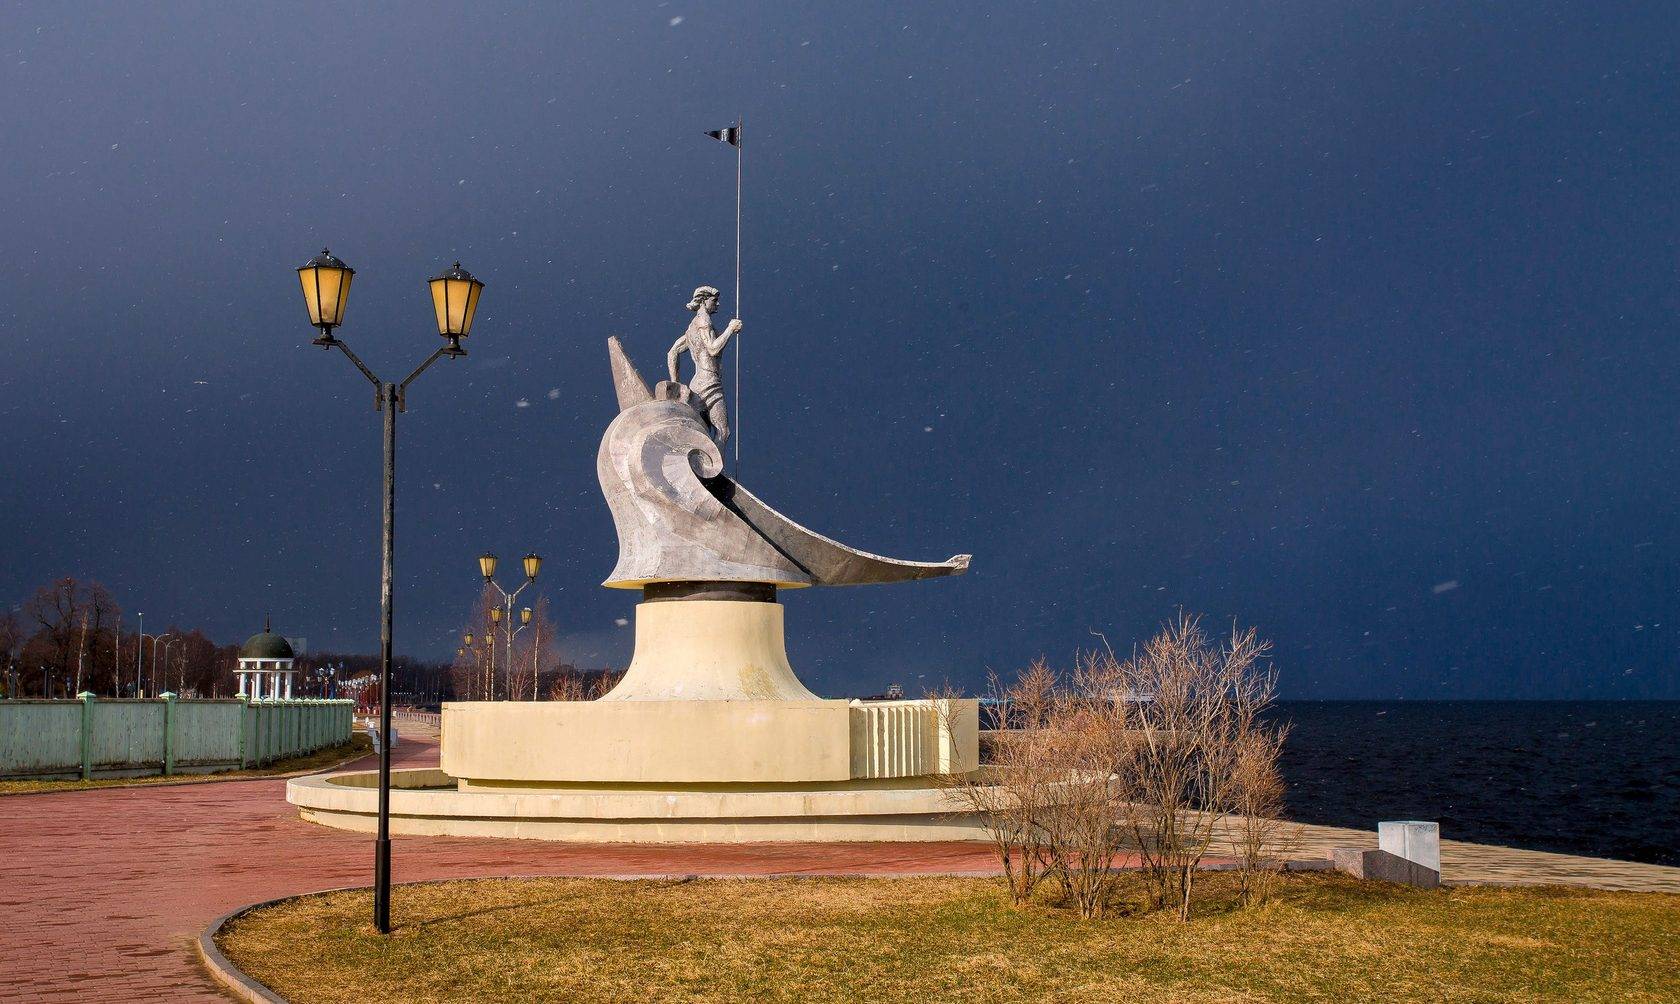 Достопримечательности петрозаводска: что посмотреть в столице карелии?